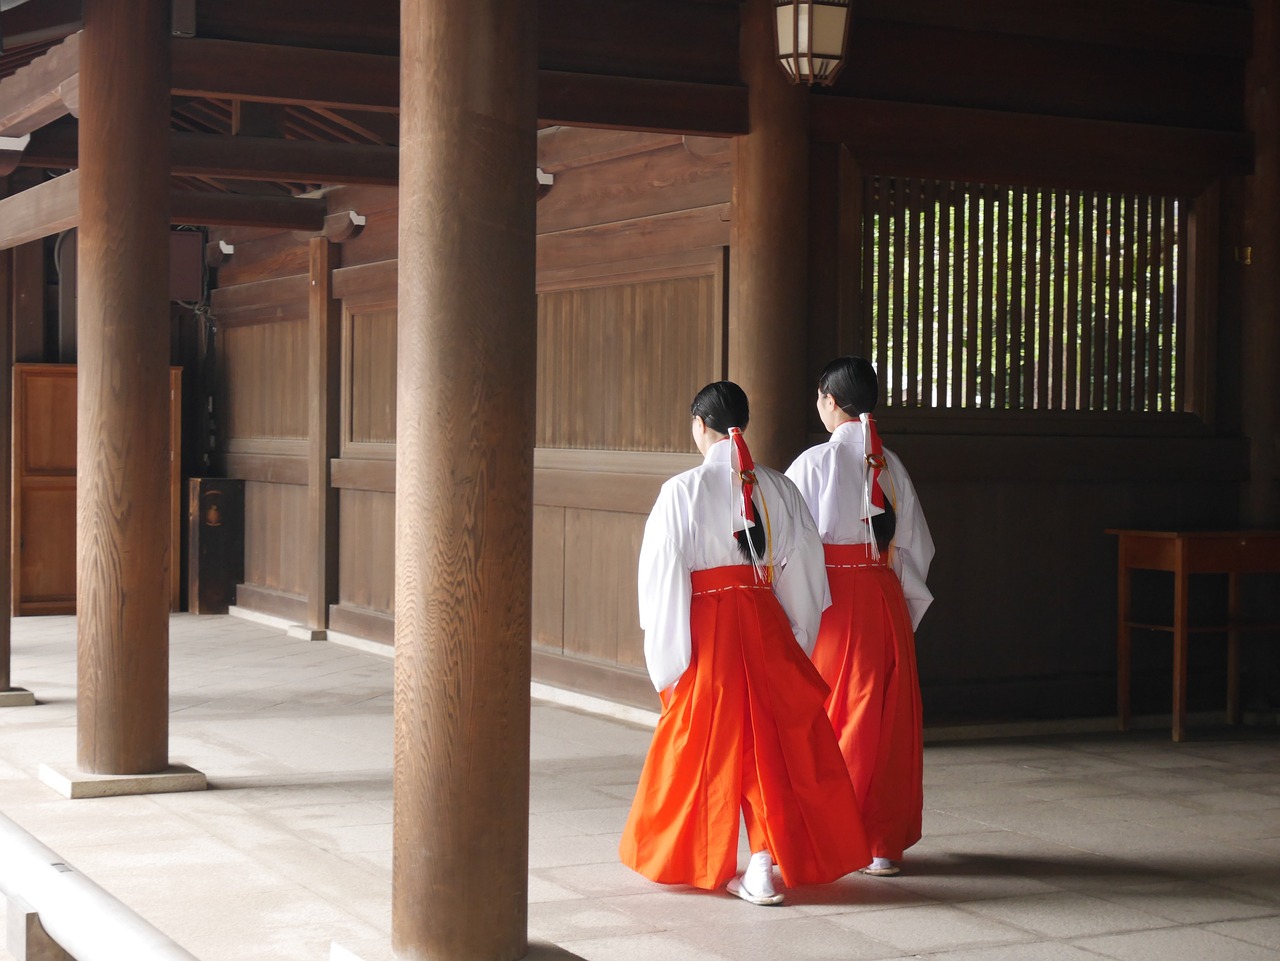 Tokyo'da Geleneksel ile Modernin Buluştuğu Meiji Jingu Tapınağı